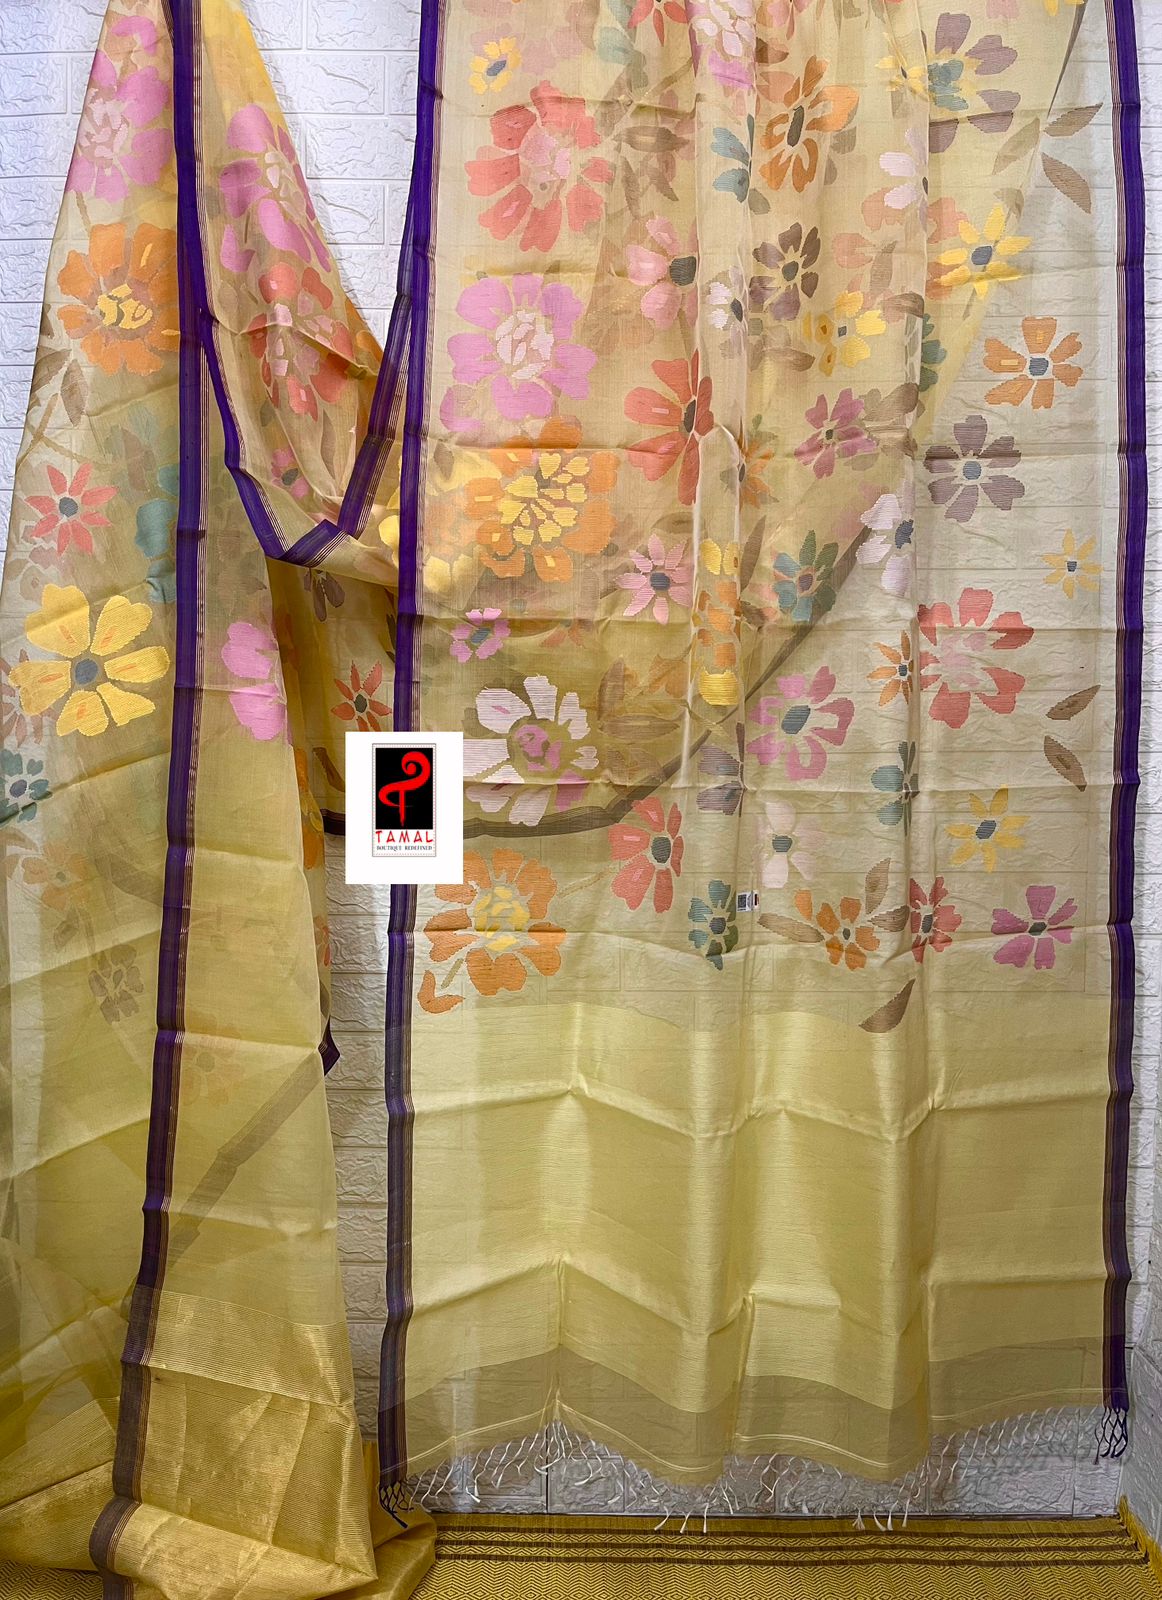 বেগুনি পাড়ের সাথে হালকা হলুদ মসলিন সিল্কে মৌসুমি ফুলের হাতে বোনা জামদানি শাড়ি